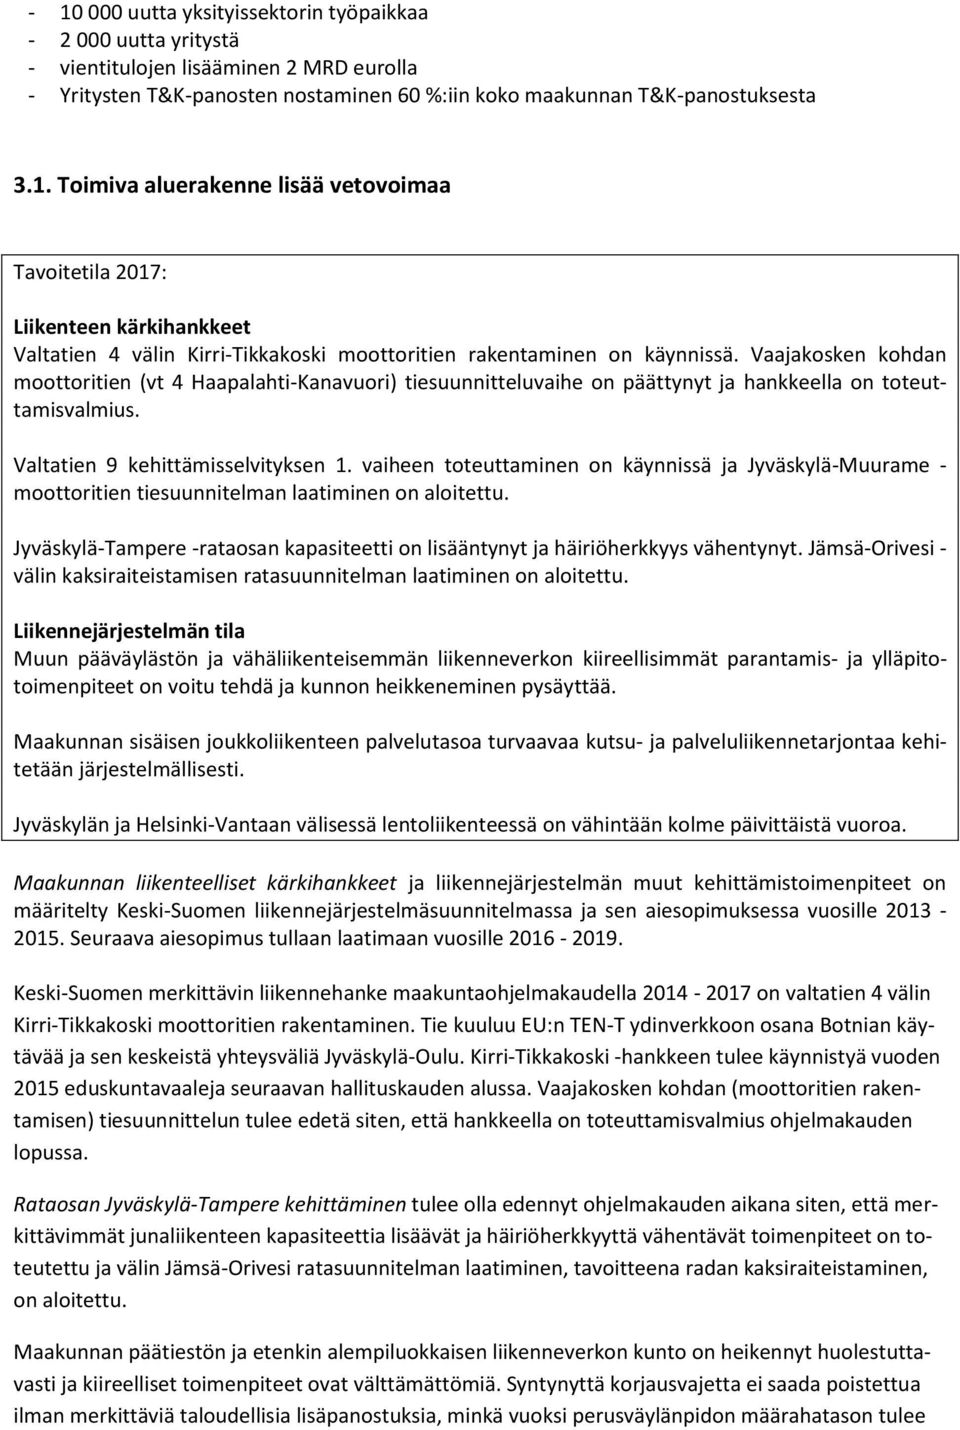 vaiheen toteuttaminen on käynnissä ja Jyväskylä-Muurame - moottoritien tiesuunnitelman laatiminen on aloitettu. Jyväskylä-Tampere -rataosan kapasiteetti on lisääntynyt ja häiriöherkkyys vähentynyt.